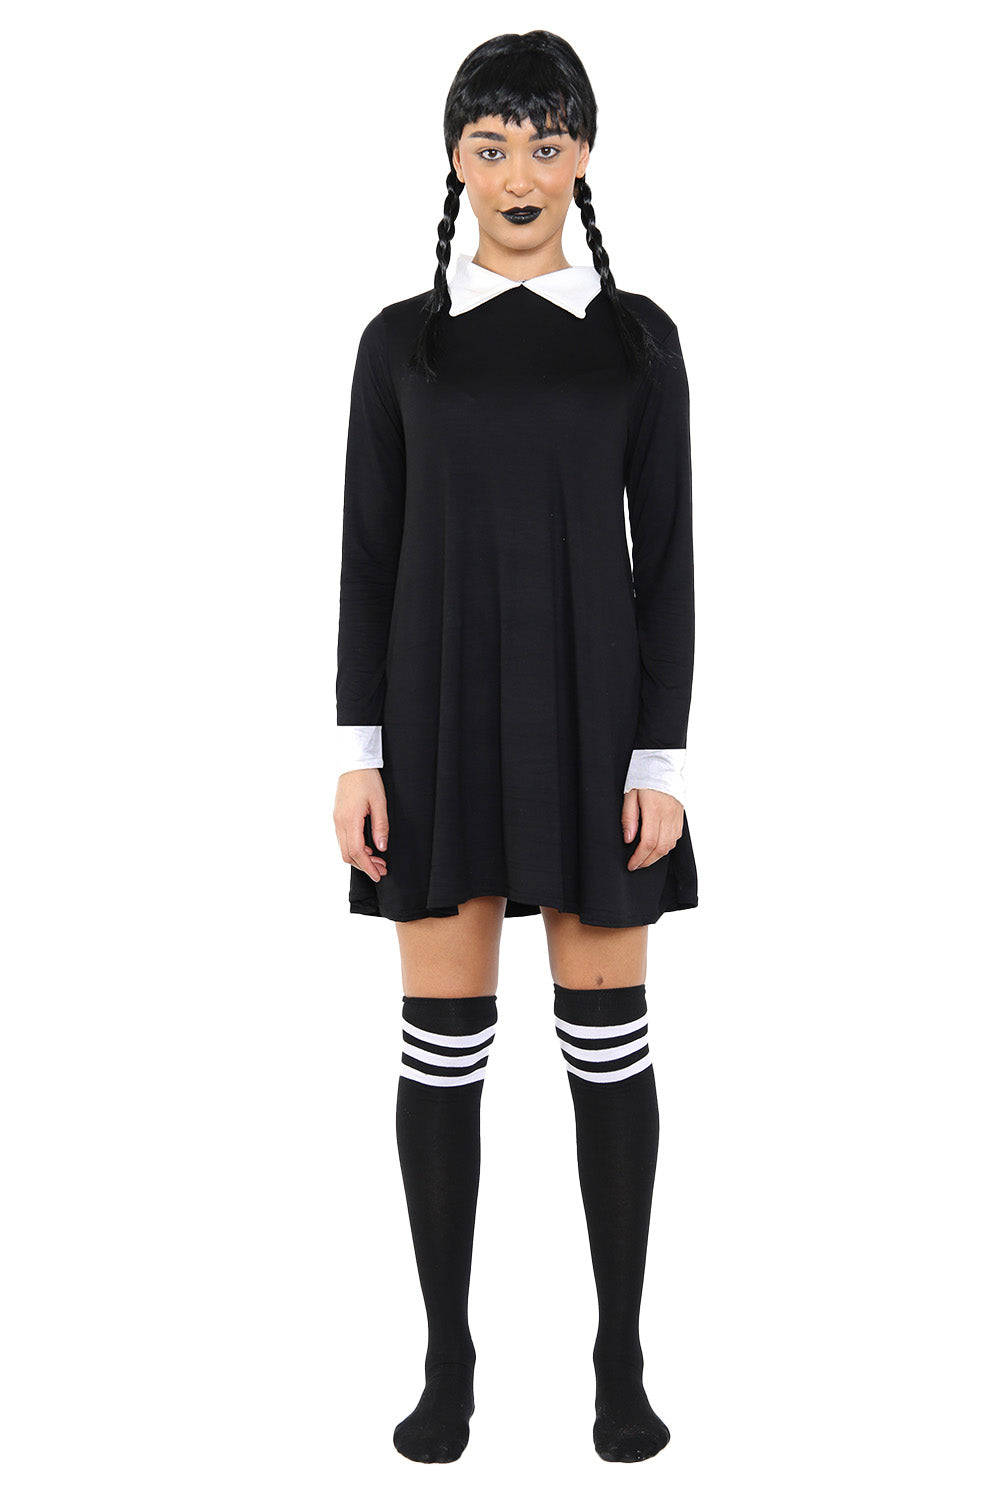 Women's Gothic School Girl Plain Swing Fancy Dress